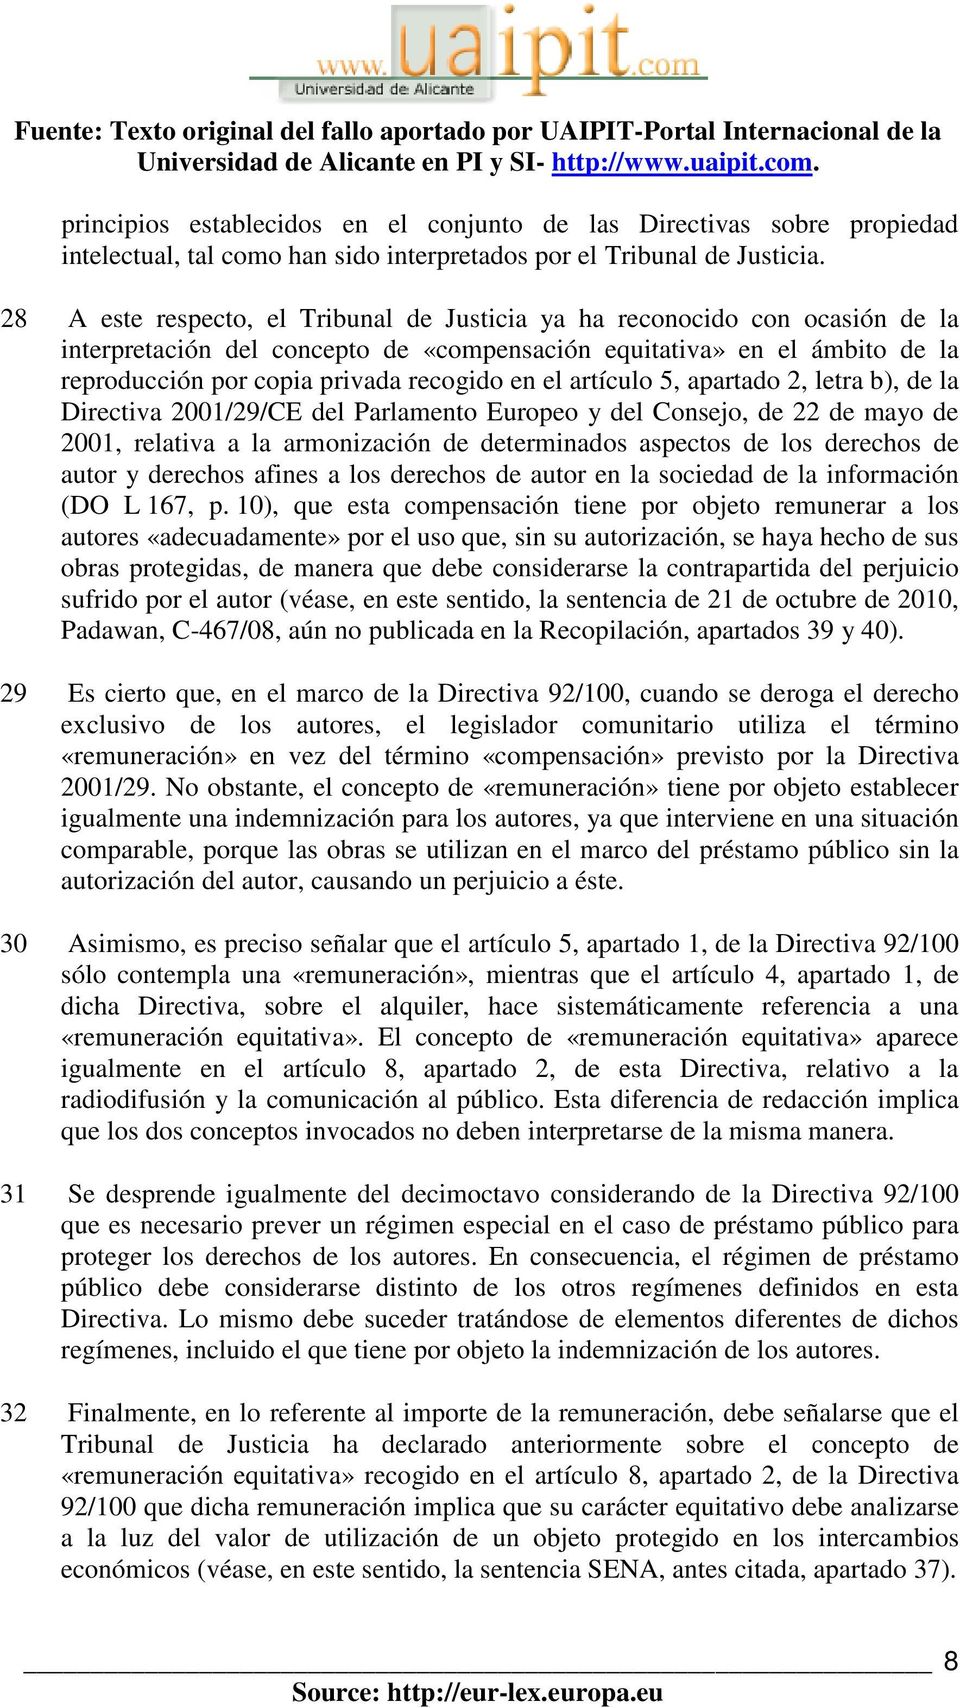 el artículo 5, apartado 2, letra b), de la Directiva 2001/29/CE del Parlamento Europeo y del Consejo, de 22 de mayo de 2001, relativa a la armonización de determinados aspectos de los derechos de